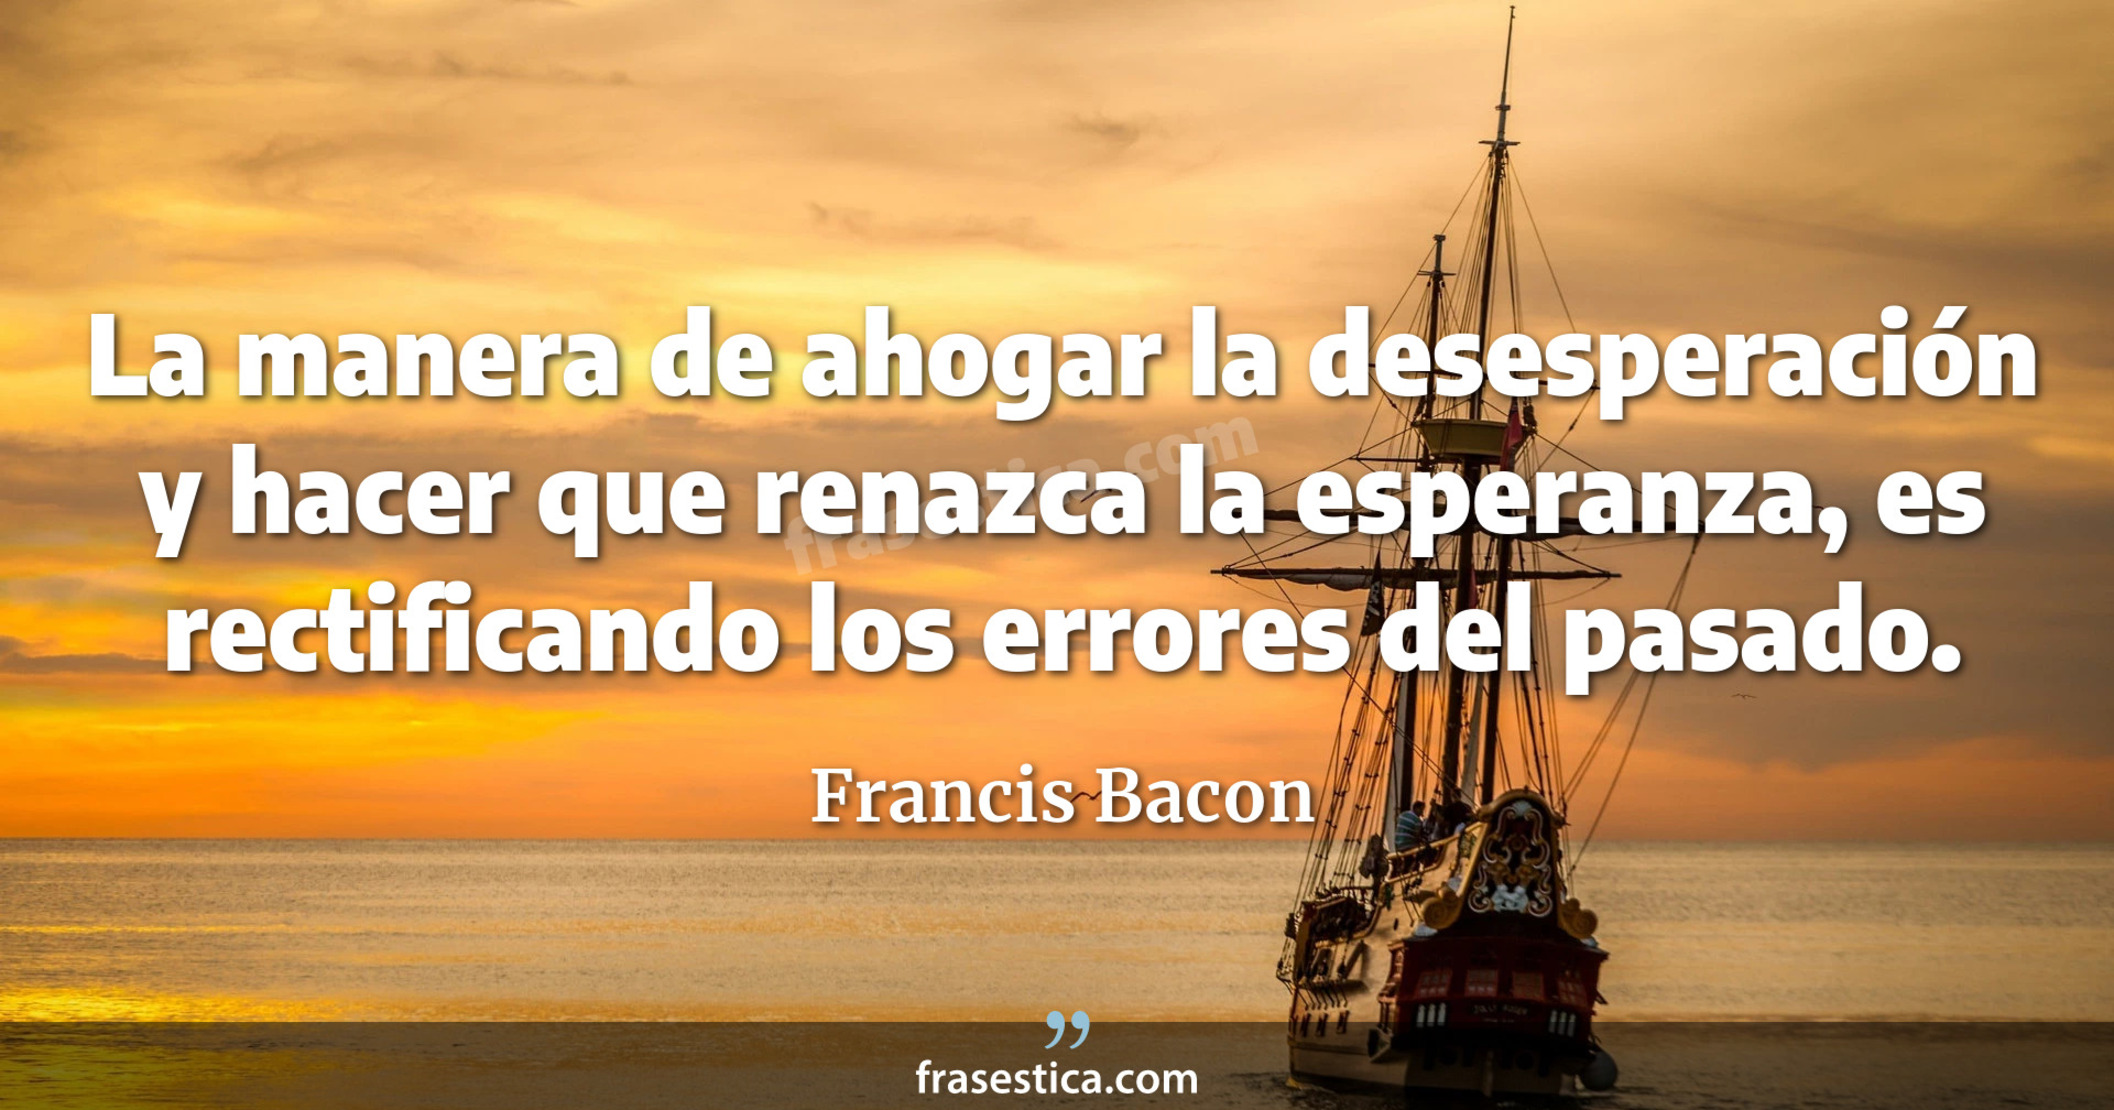 La manera de ahogar la desesperación y hacer que renazca la esperanza, es rectificando los errores del pasado. - Francis Bacon